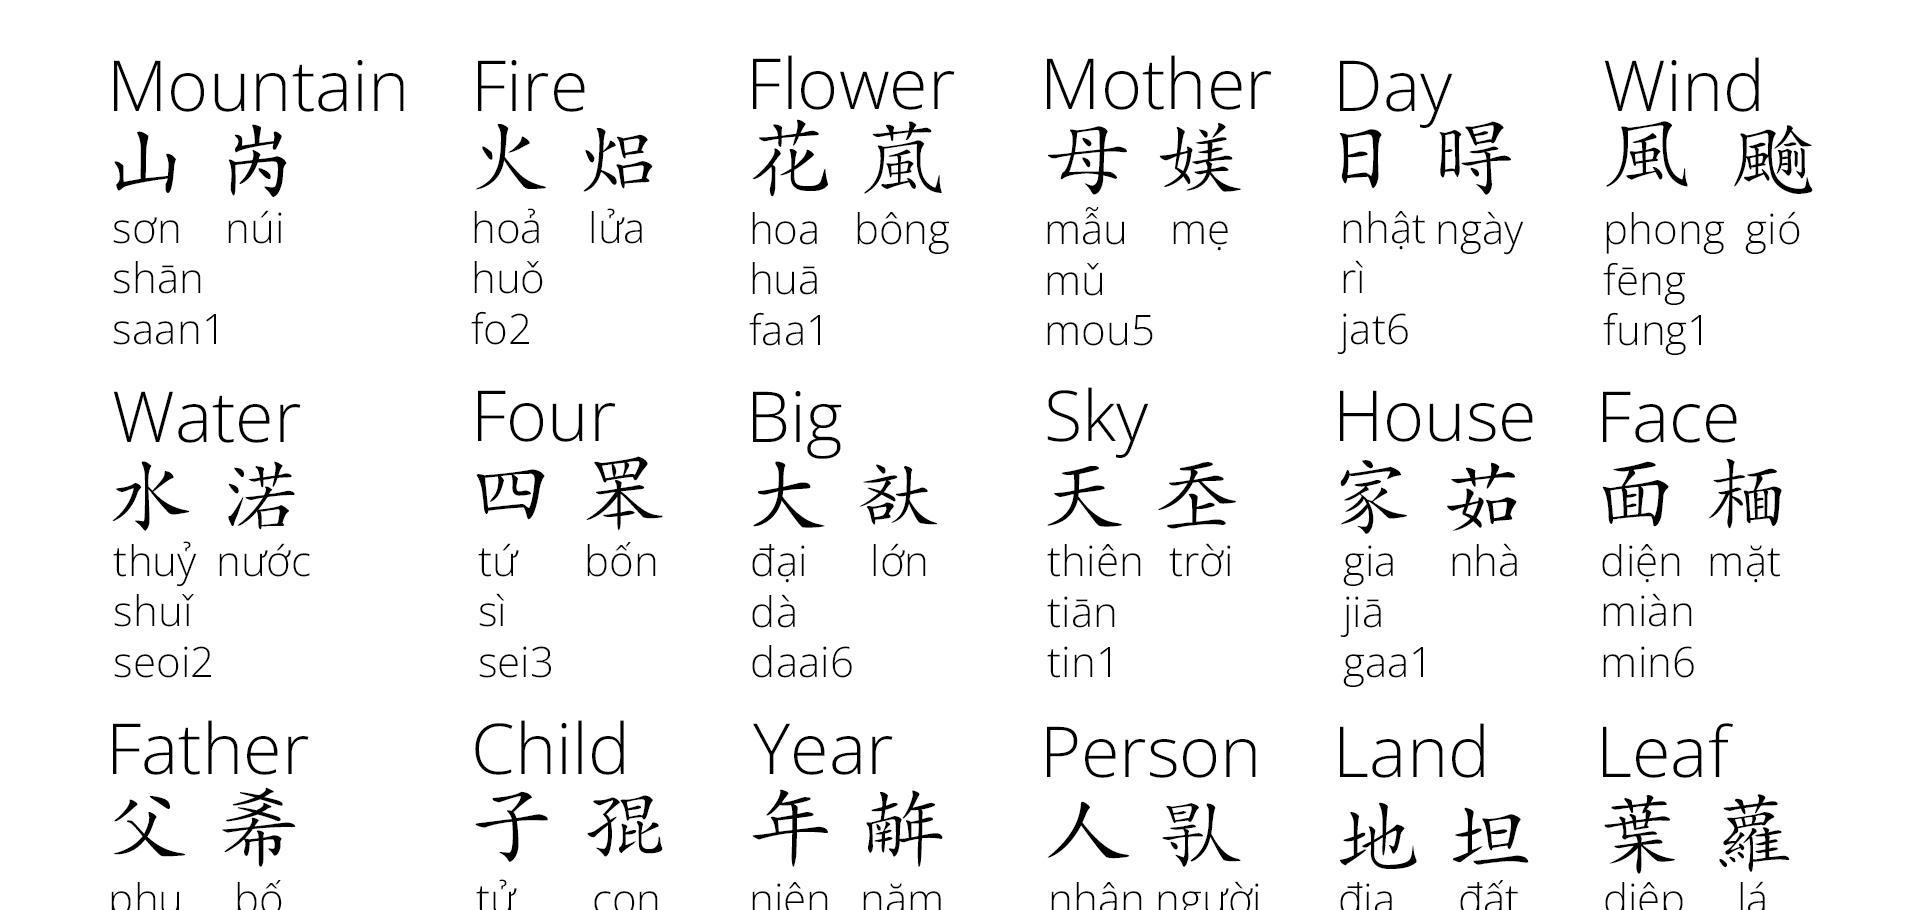 越南语和汉语什么关系? 为啥属于南亚语系? 南亚语系有什么历史?